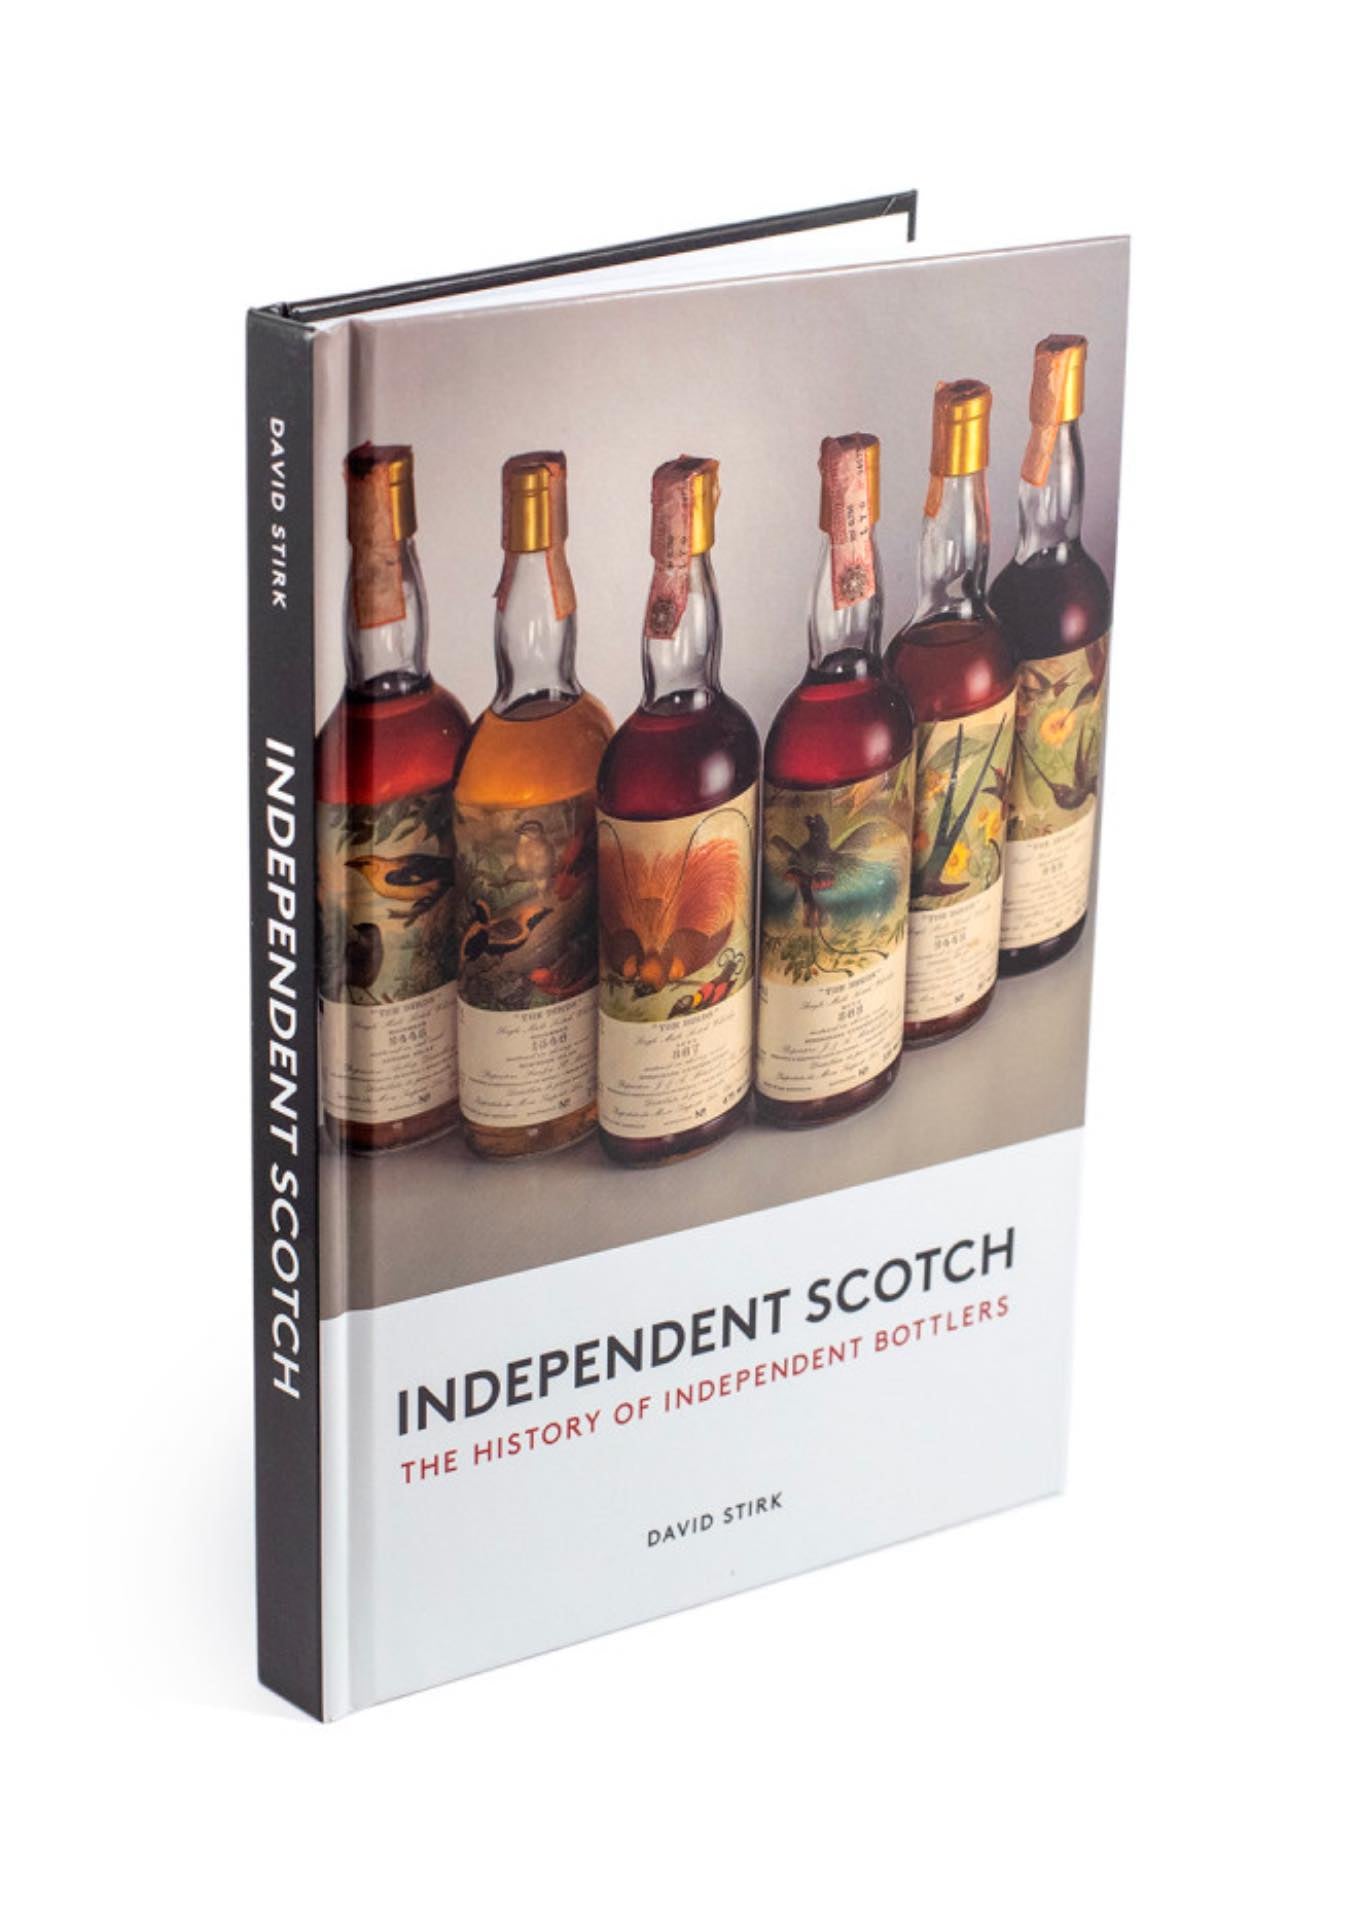 独立苏格兰威士忌，独立装瓶商的历史，作者：David Stirk